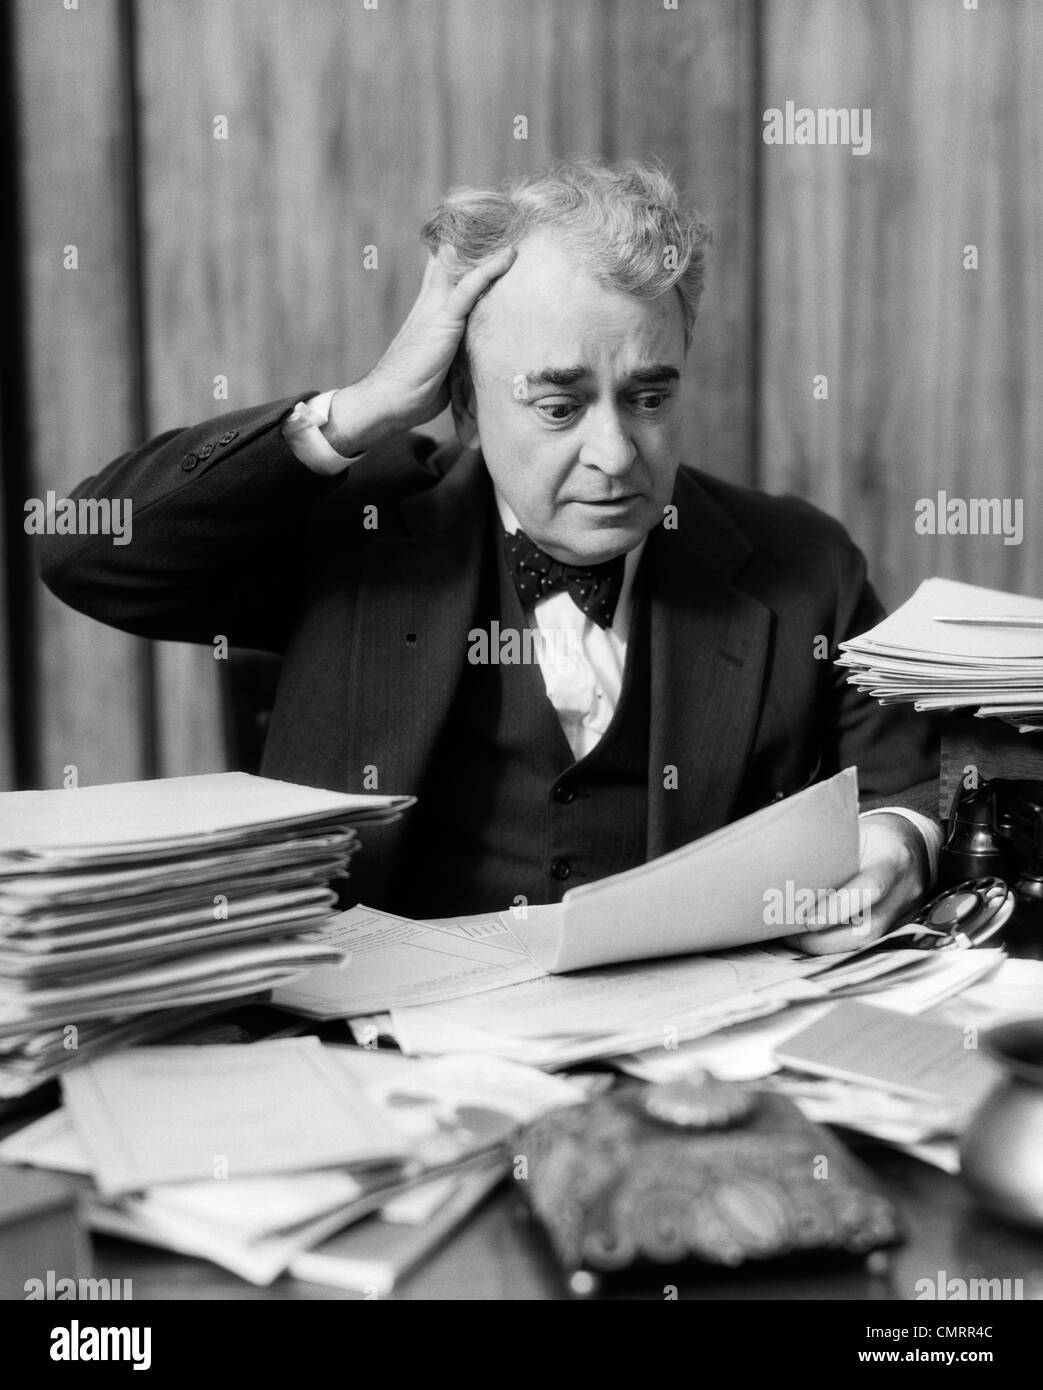 1930s imprenditore anziani seduti alla scrivania tra pile di carta con le mani nei capelli & espressione sconcertata Foto Stock